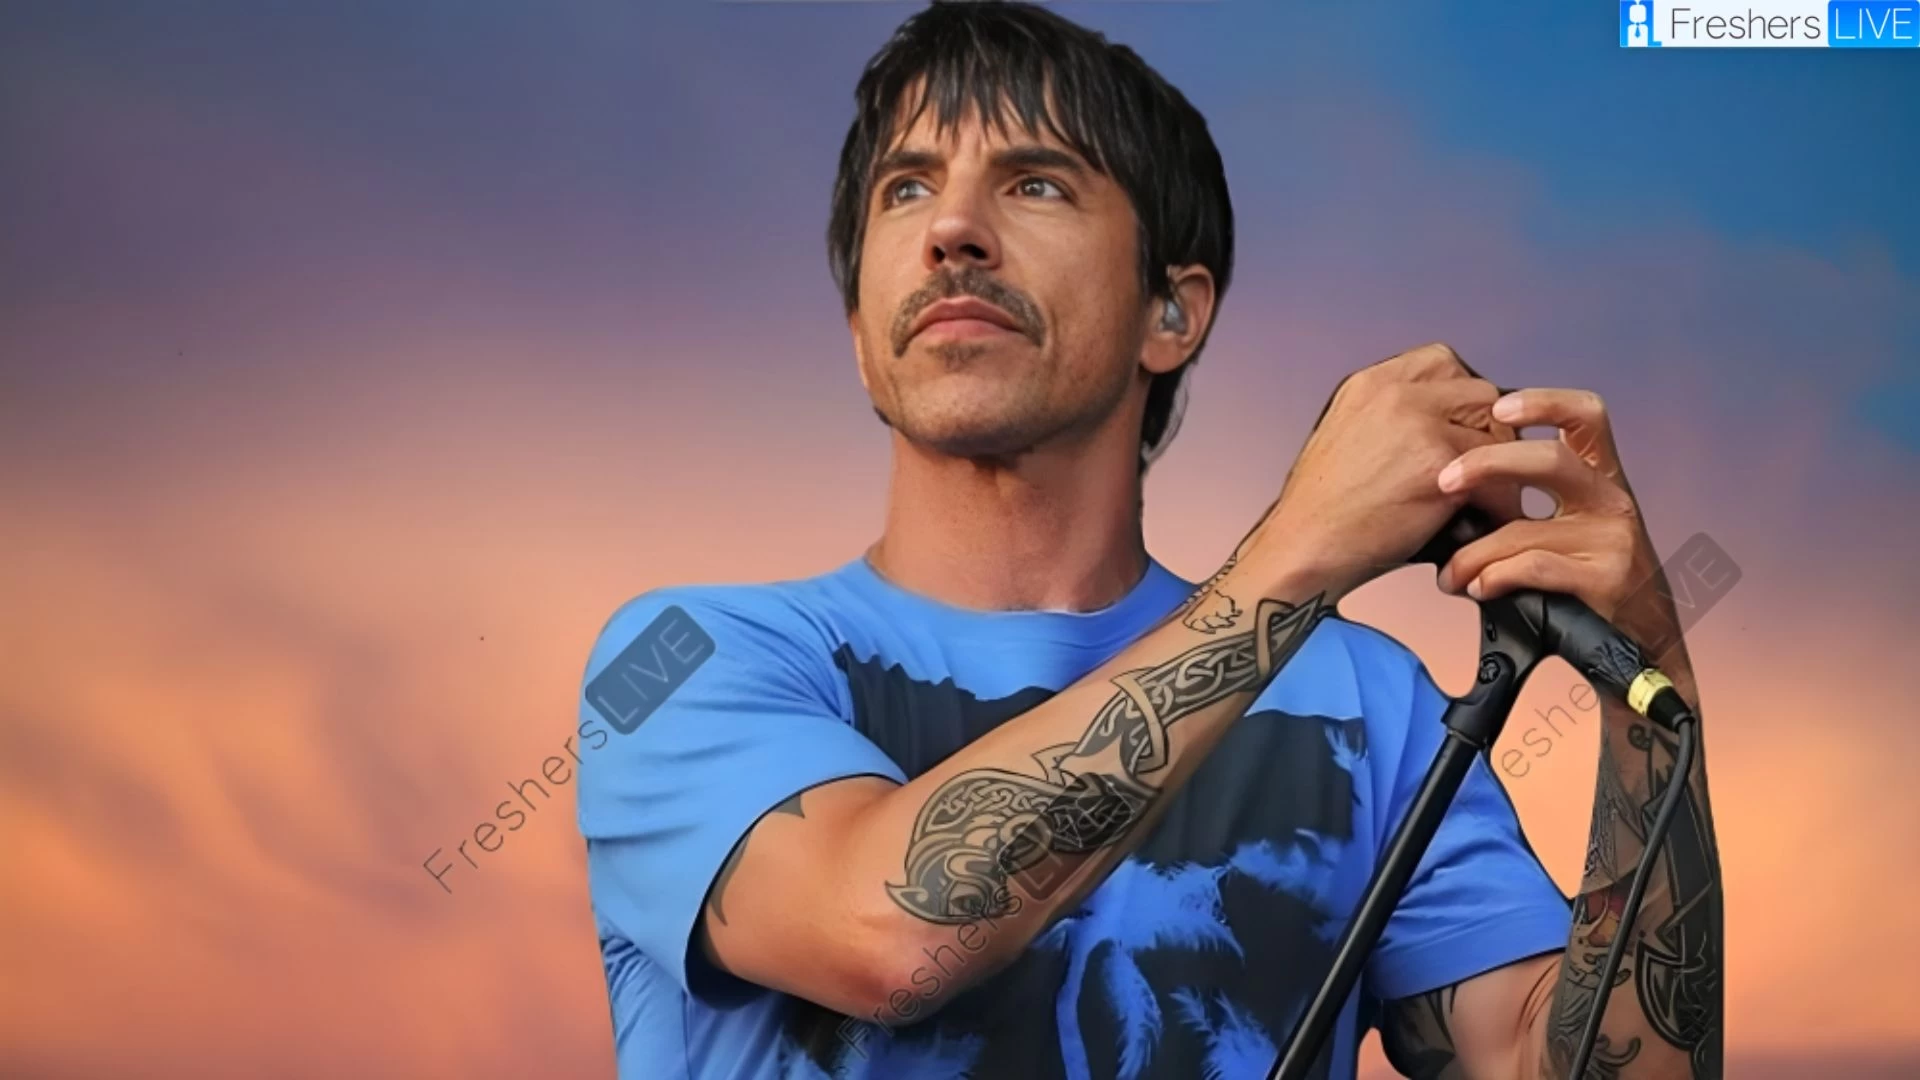 Etnia de Anthony Kiedis, ¿Cuál es la etnia de Anthony Kiedis?